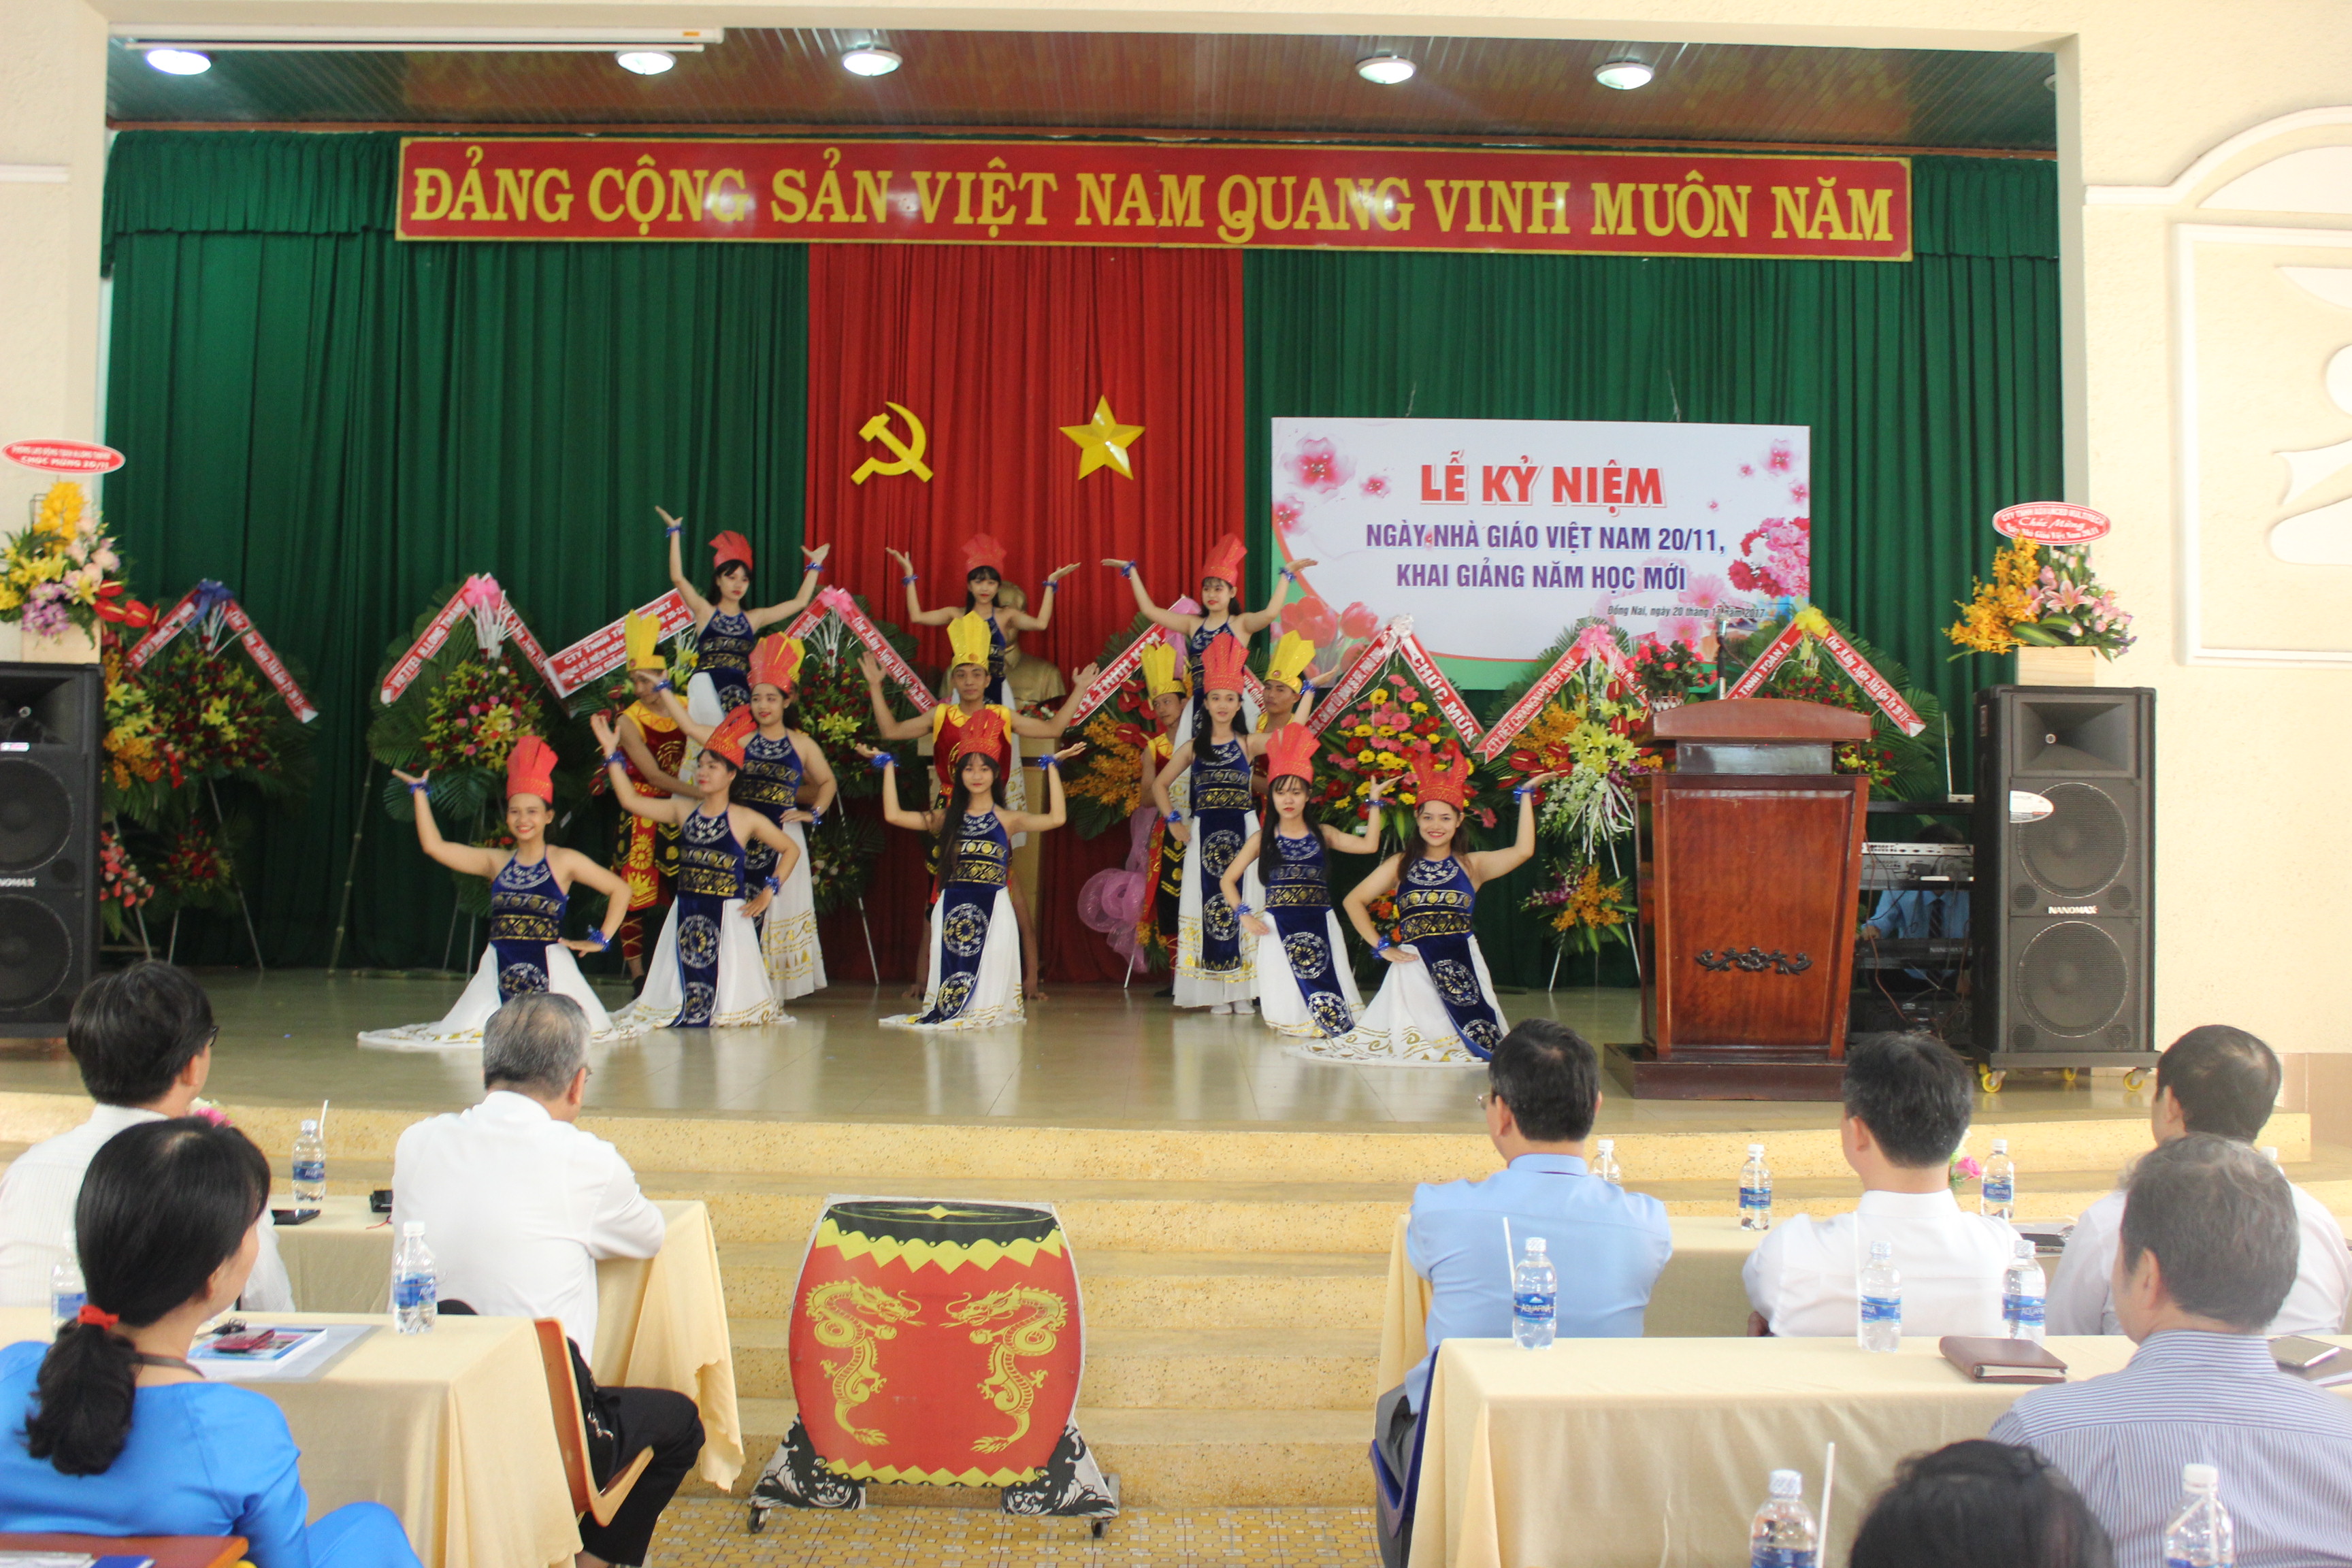 Chương trình văn nghệ chào mừng Ngày nhà giáo Việt Nam (20/11/2017)